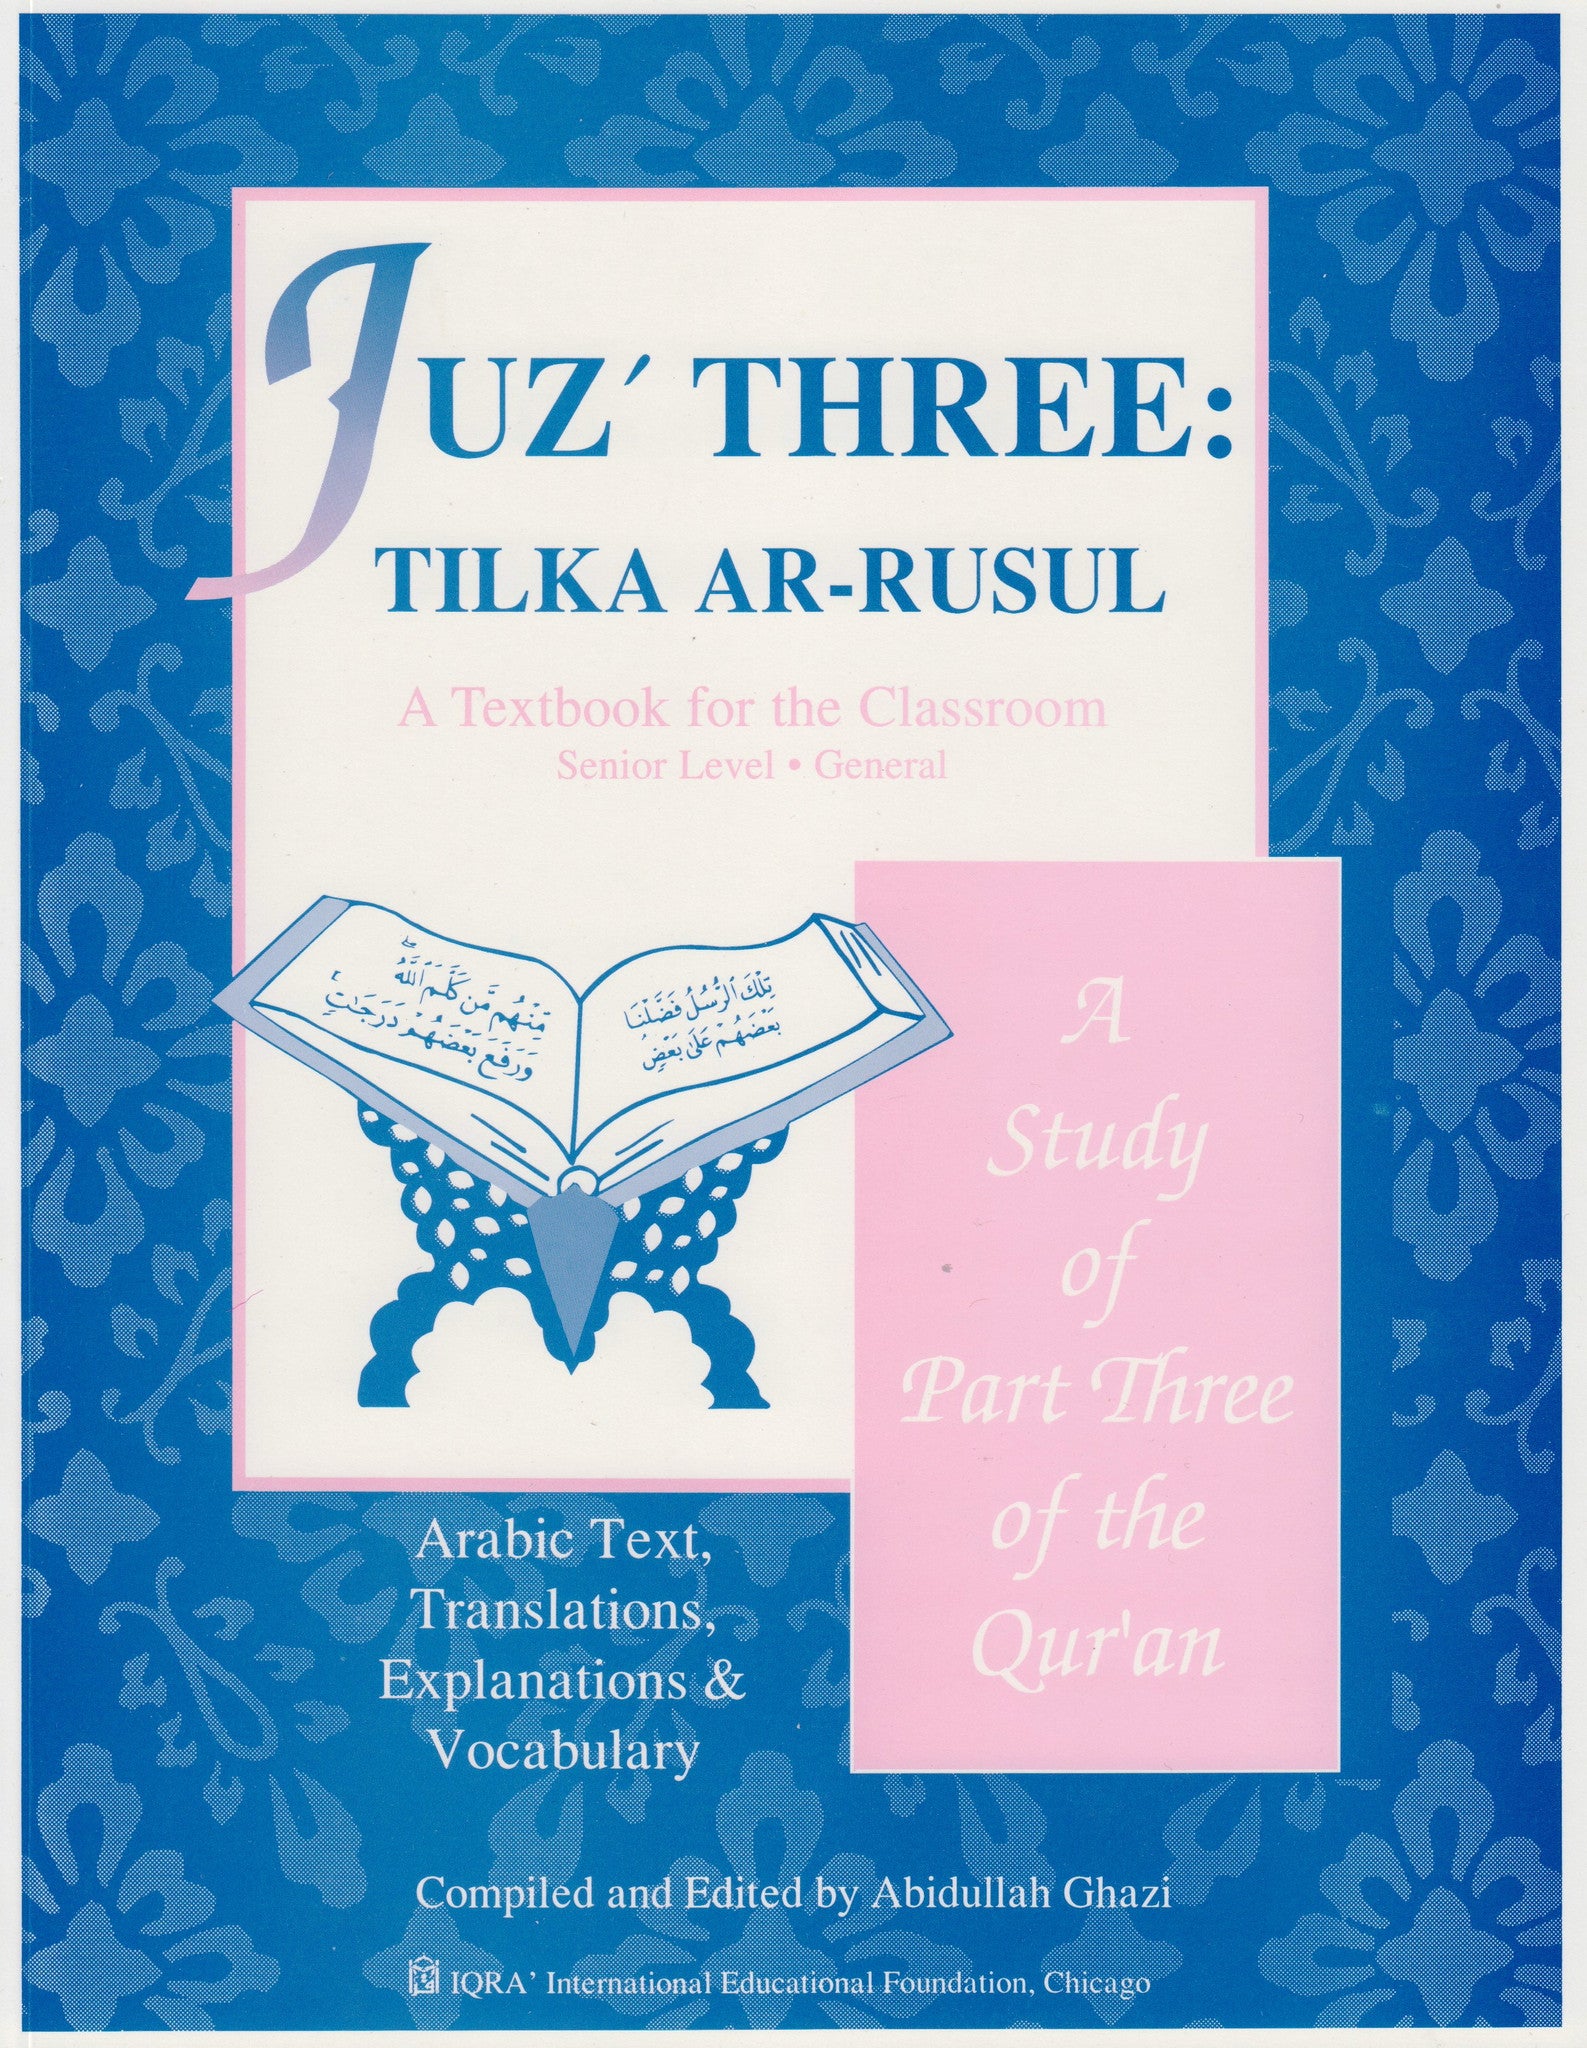 Juz' Three Tilka ar-Rasul Textbook